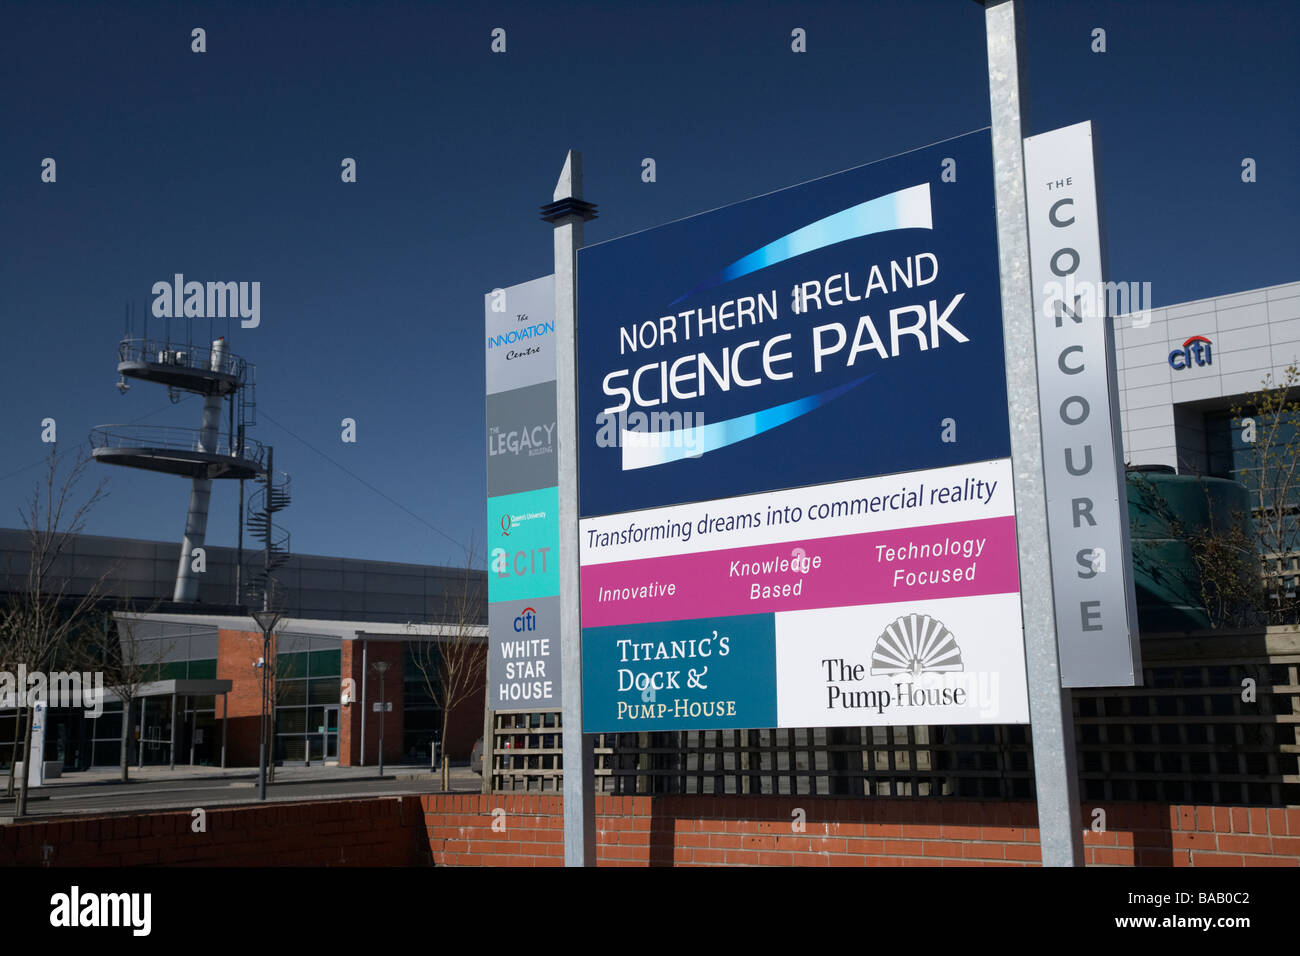 El centro de innovación en Irlanda del Norte, Science Park Titanic Quarter isla de Queens de Belfast Reino Unido Irlanda del Norte Foto de stock